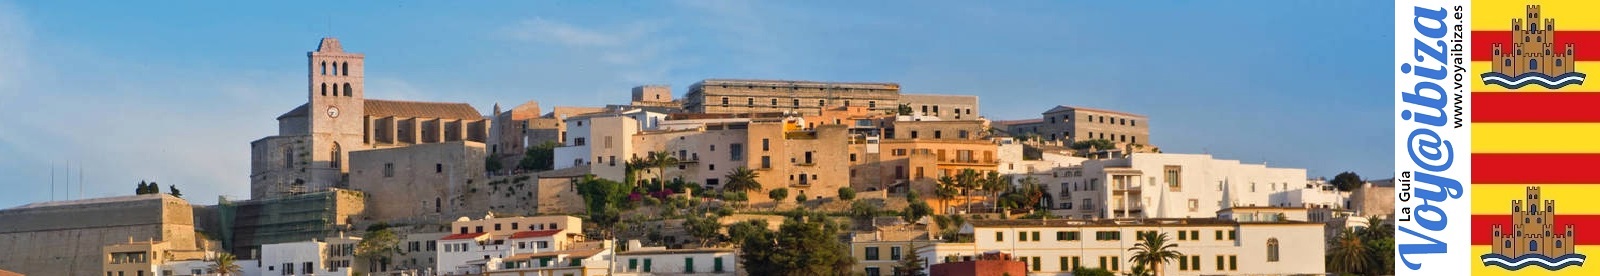 El Castillo de Ibiza